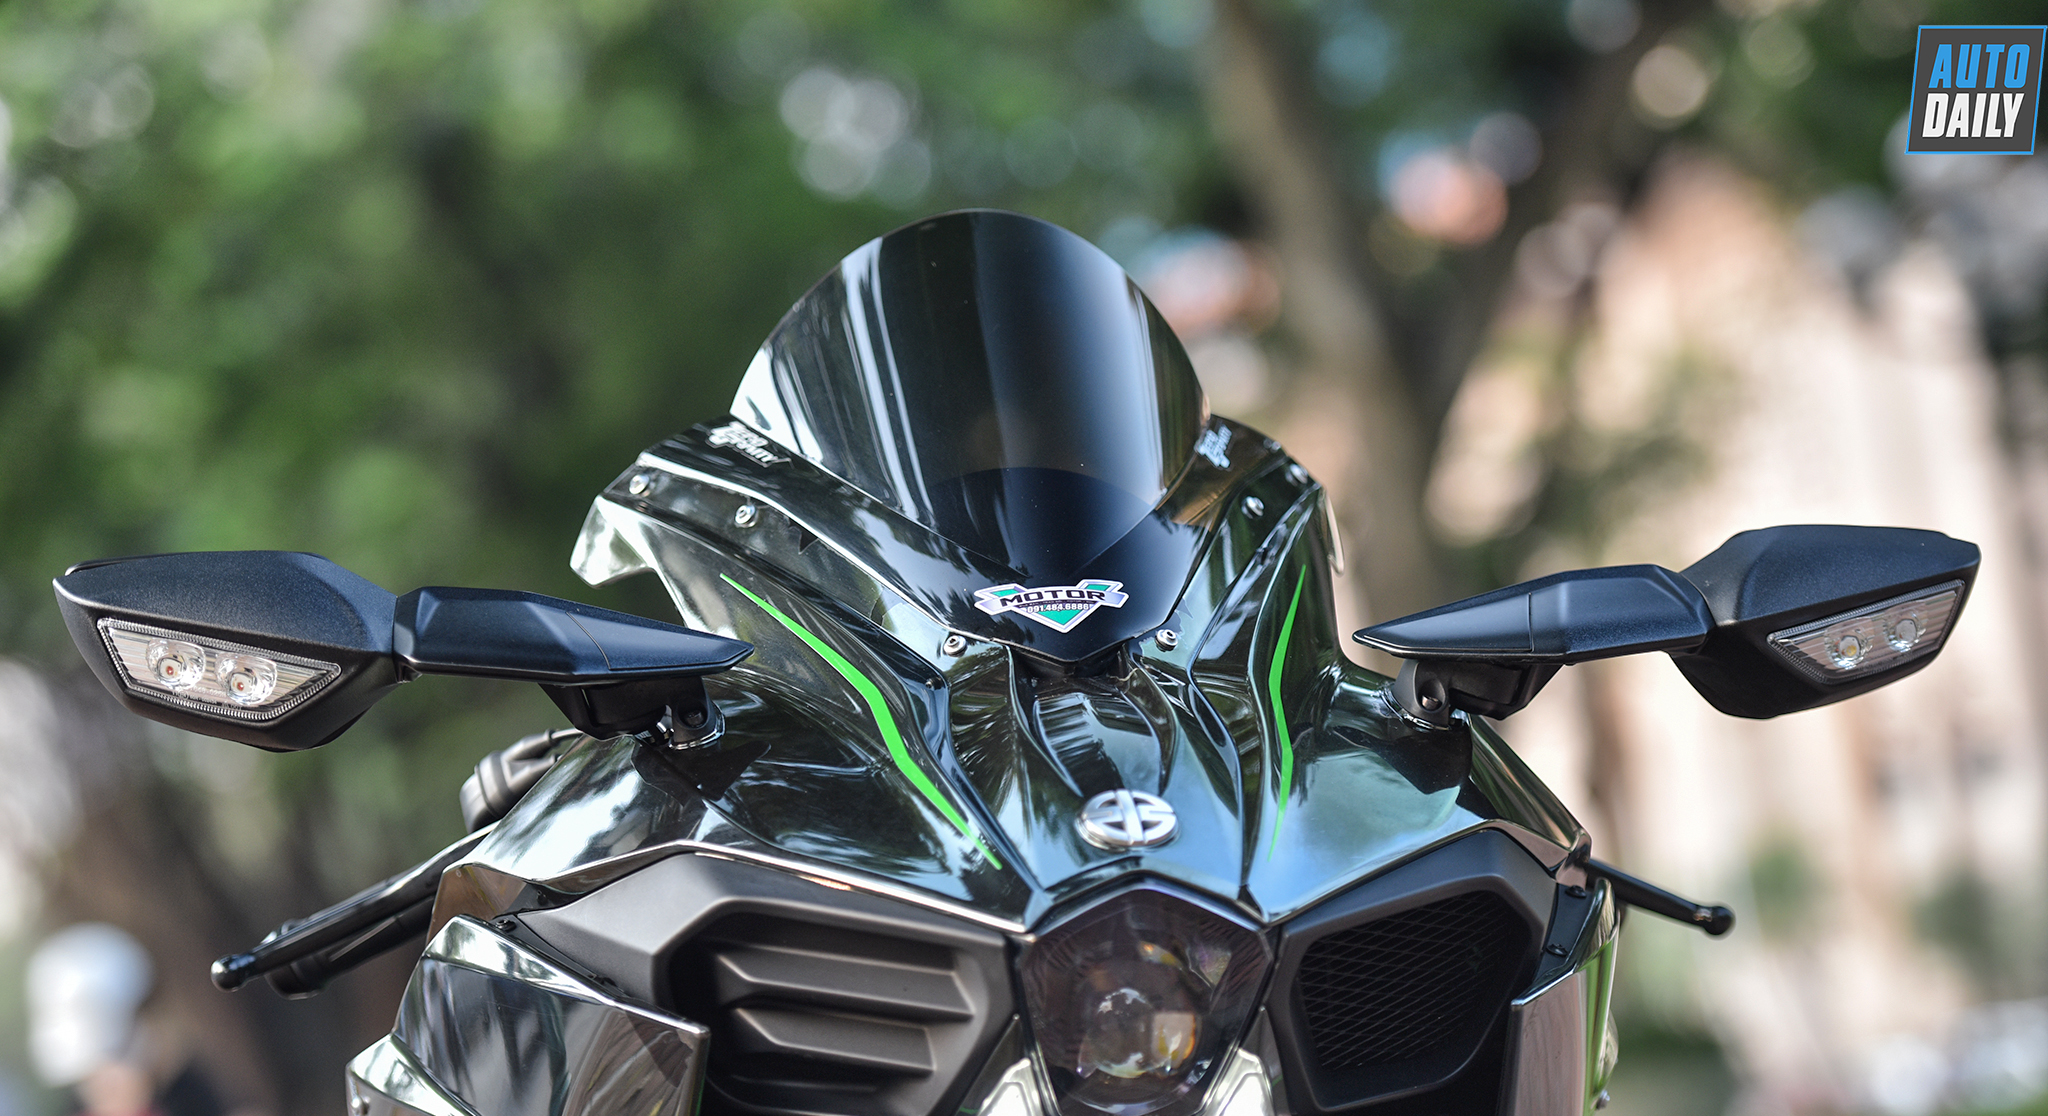 Siêu môtô Kawasaki Ninja H2 siêu lướt giá 850 triệu tại Hà Nội h36.jpg